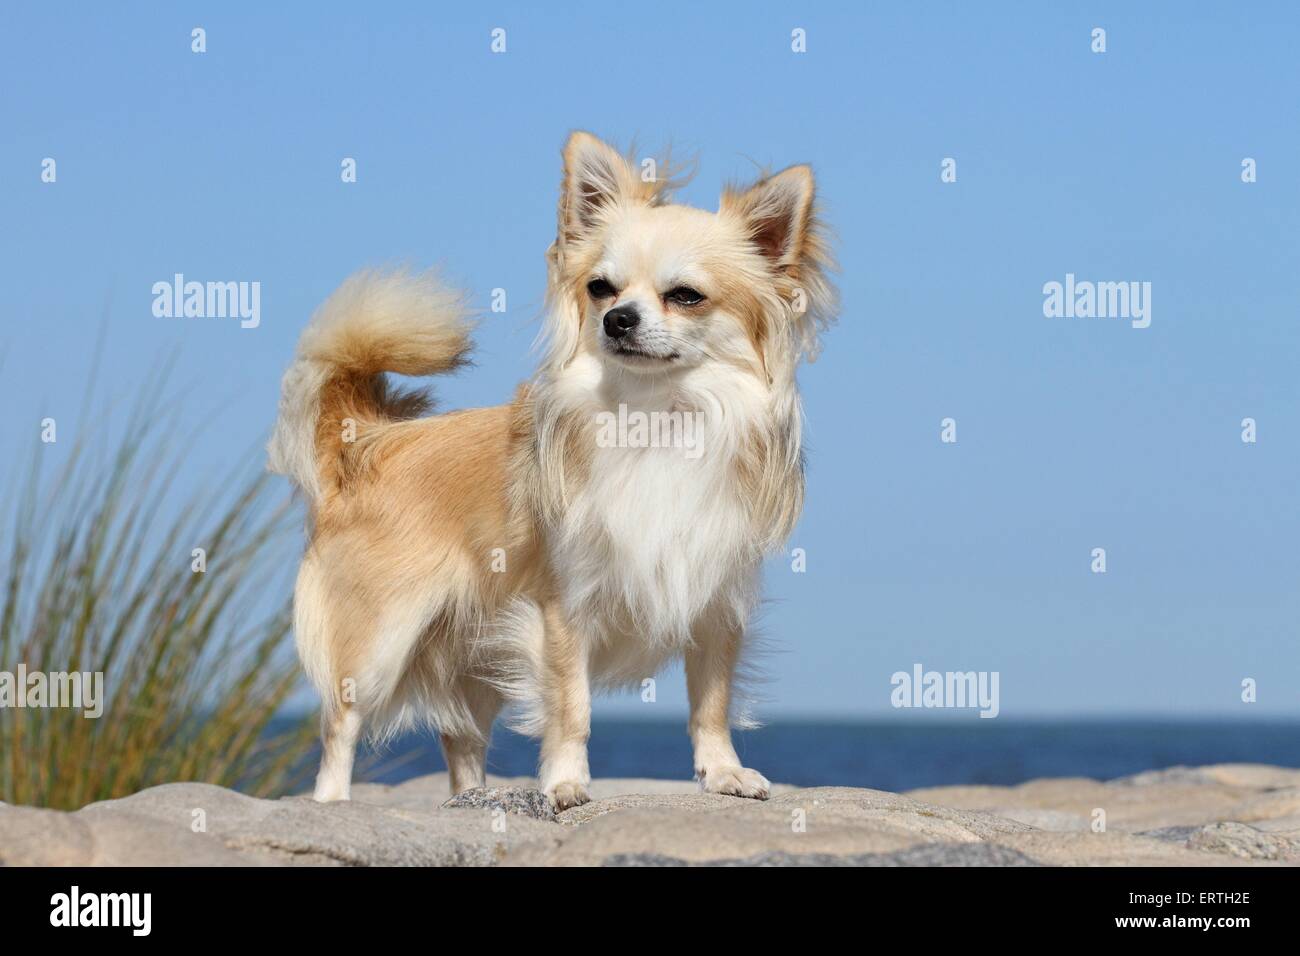 Chihuahua à poil long Banque D'Images